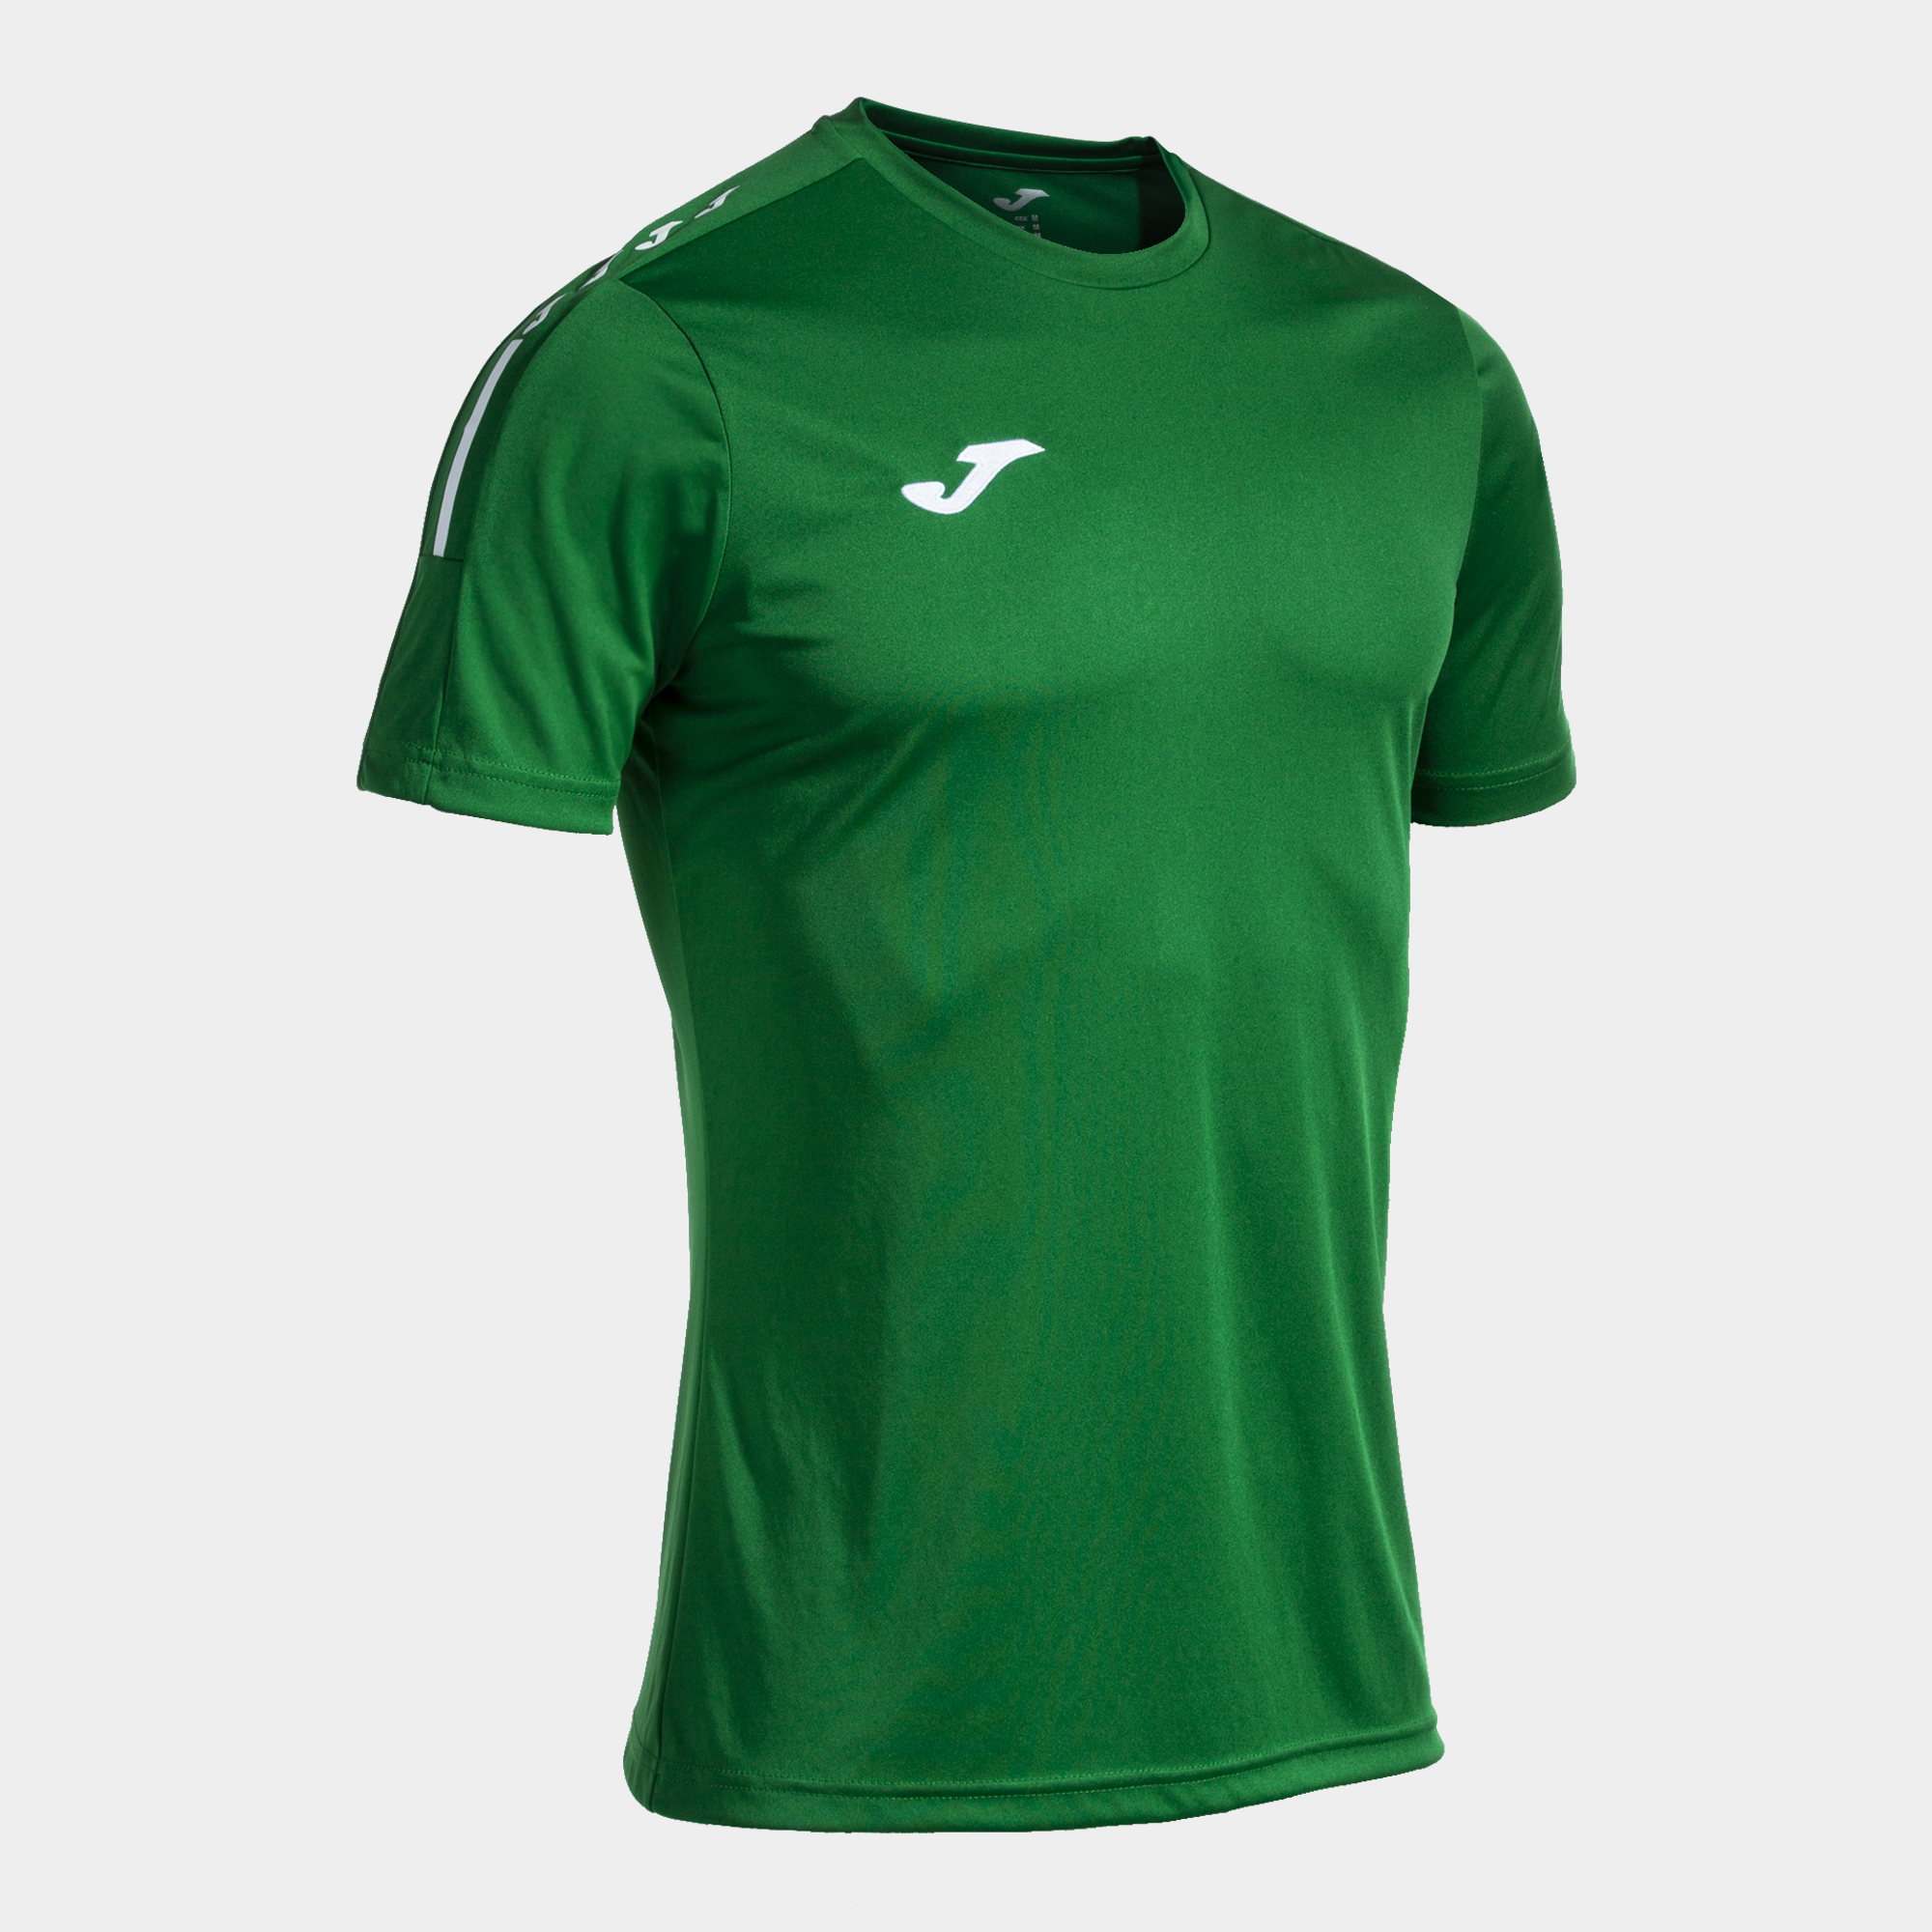 Camiseta Manga Corta Joma Olimpiada - verde - 